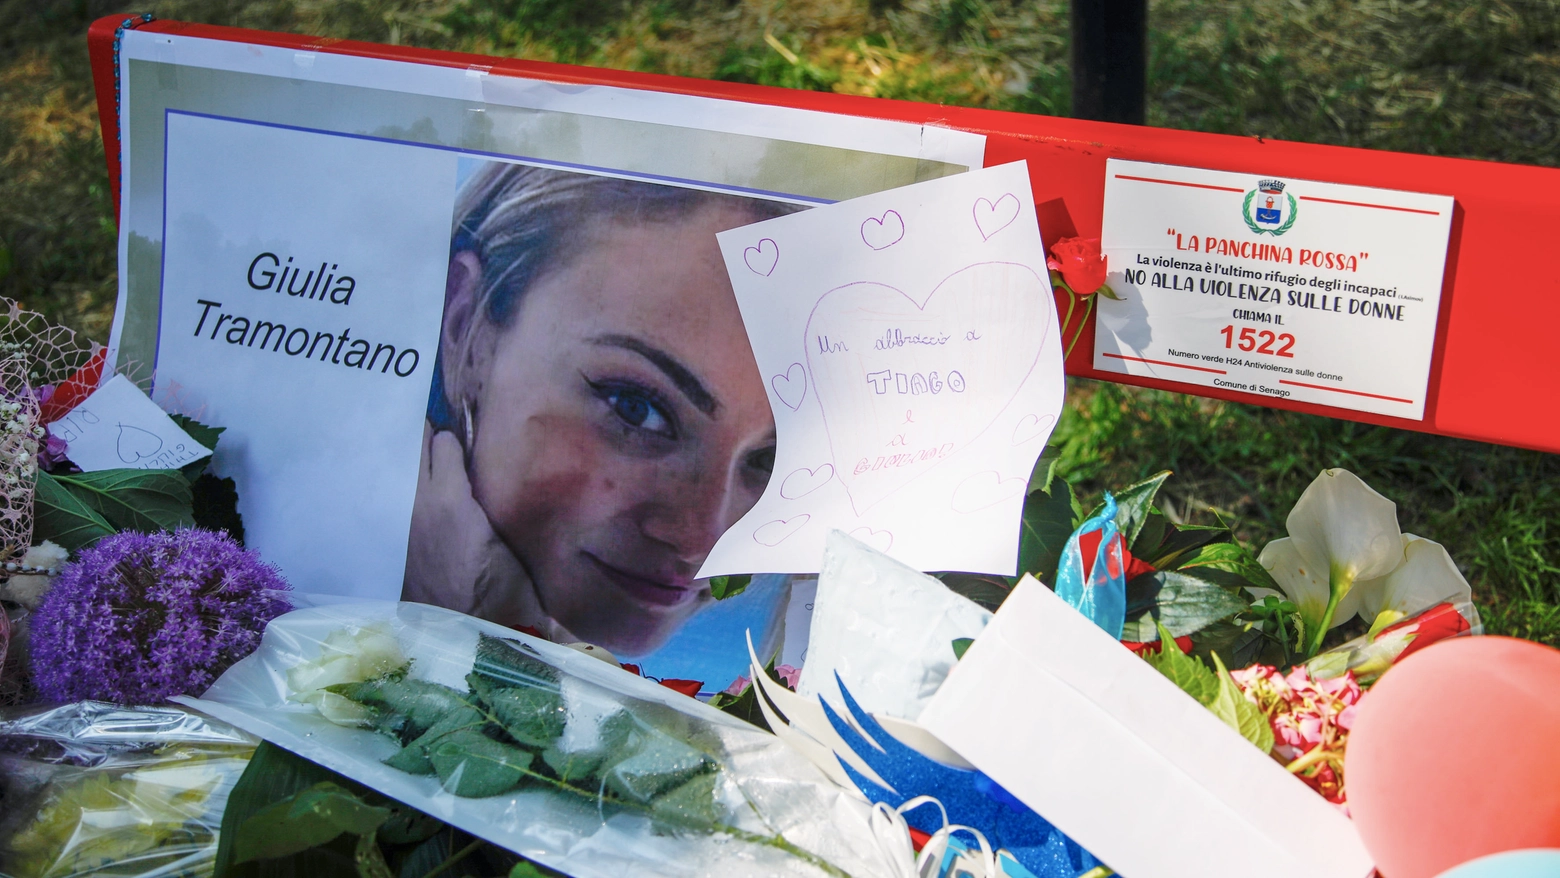 Le tante testimonianze di affetto per Giulia Tramontano sulla panchina rossa di Senago